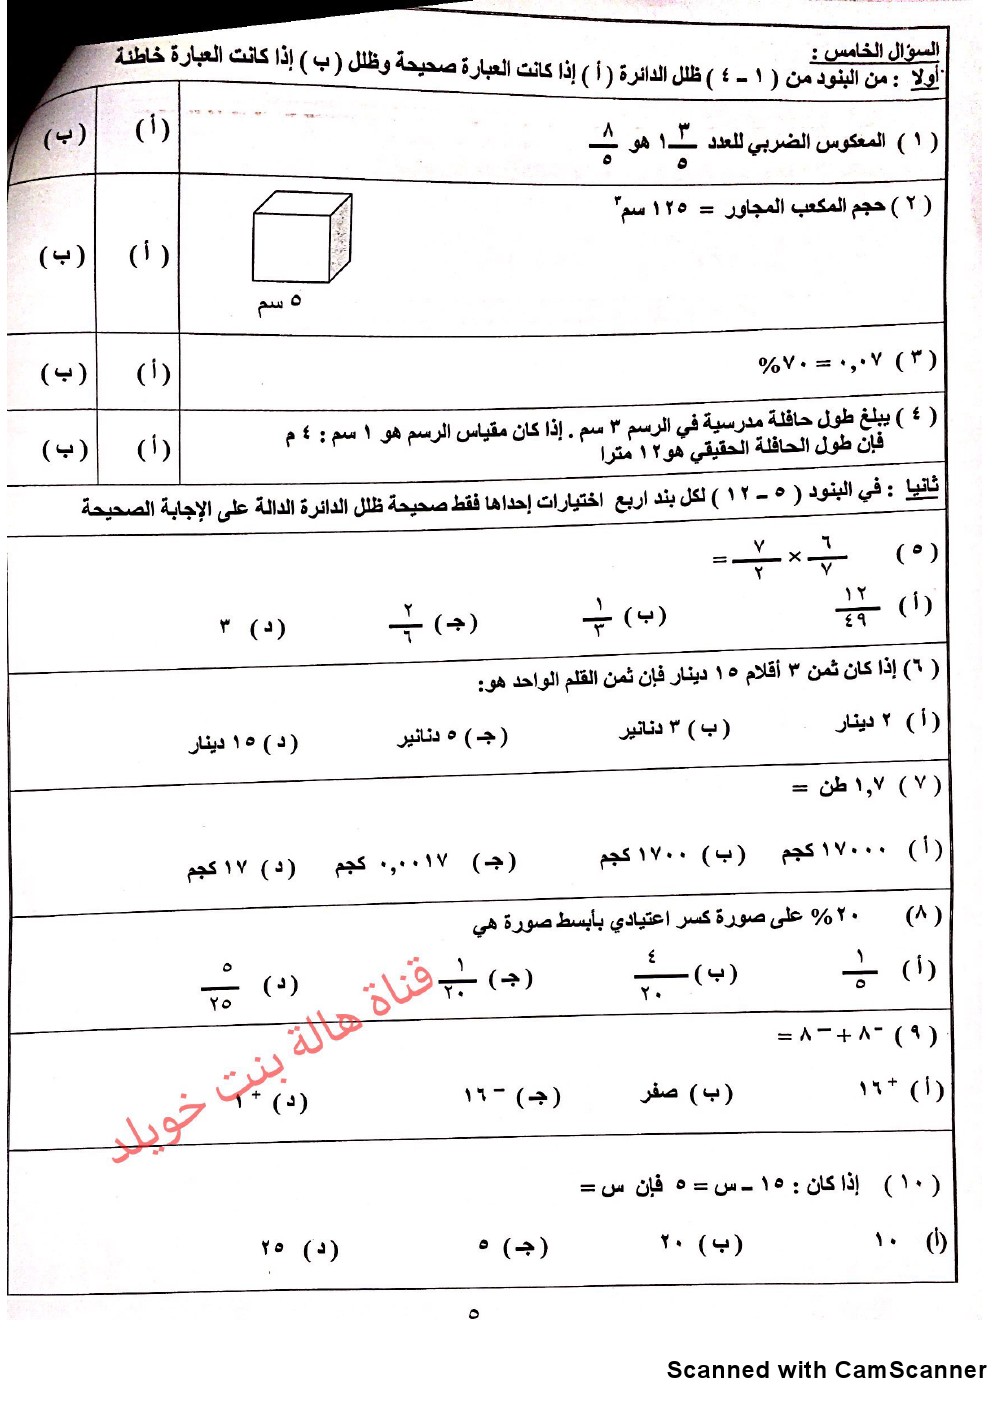 نموذج اختبار لوحدة الكبار ومحو الامية في مادة الرياضيات الصف السادس رياضيات الفصل الثاني ملفات الكويت التعليمية